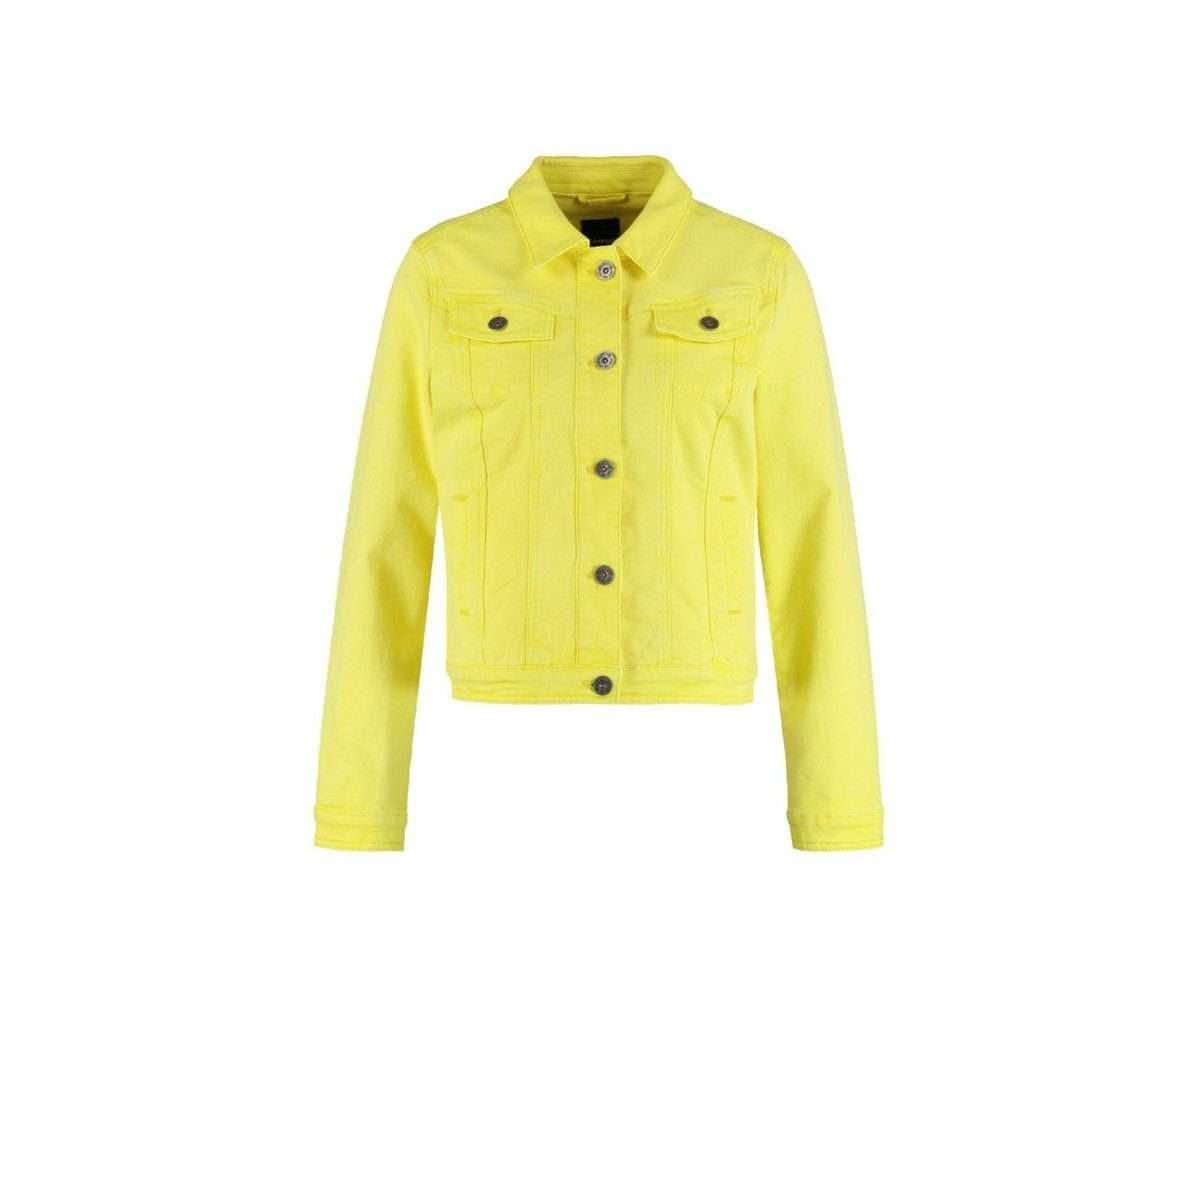 Джинсовая куртка желтая (1 шт)